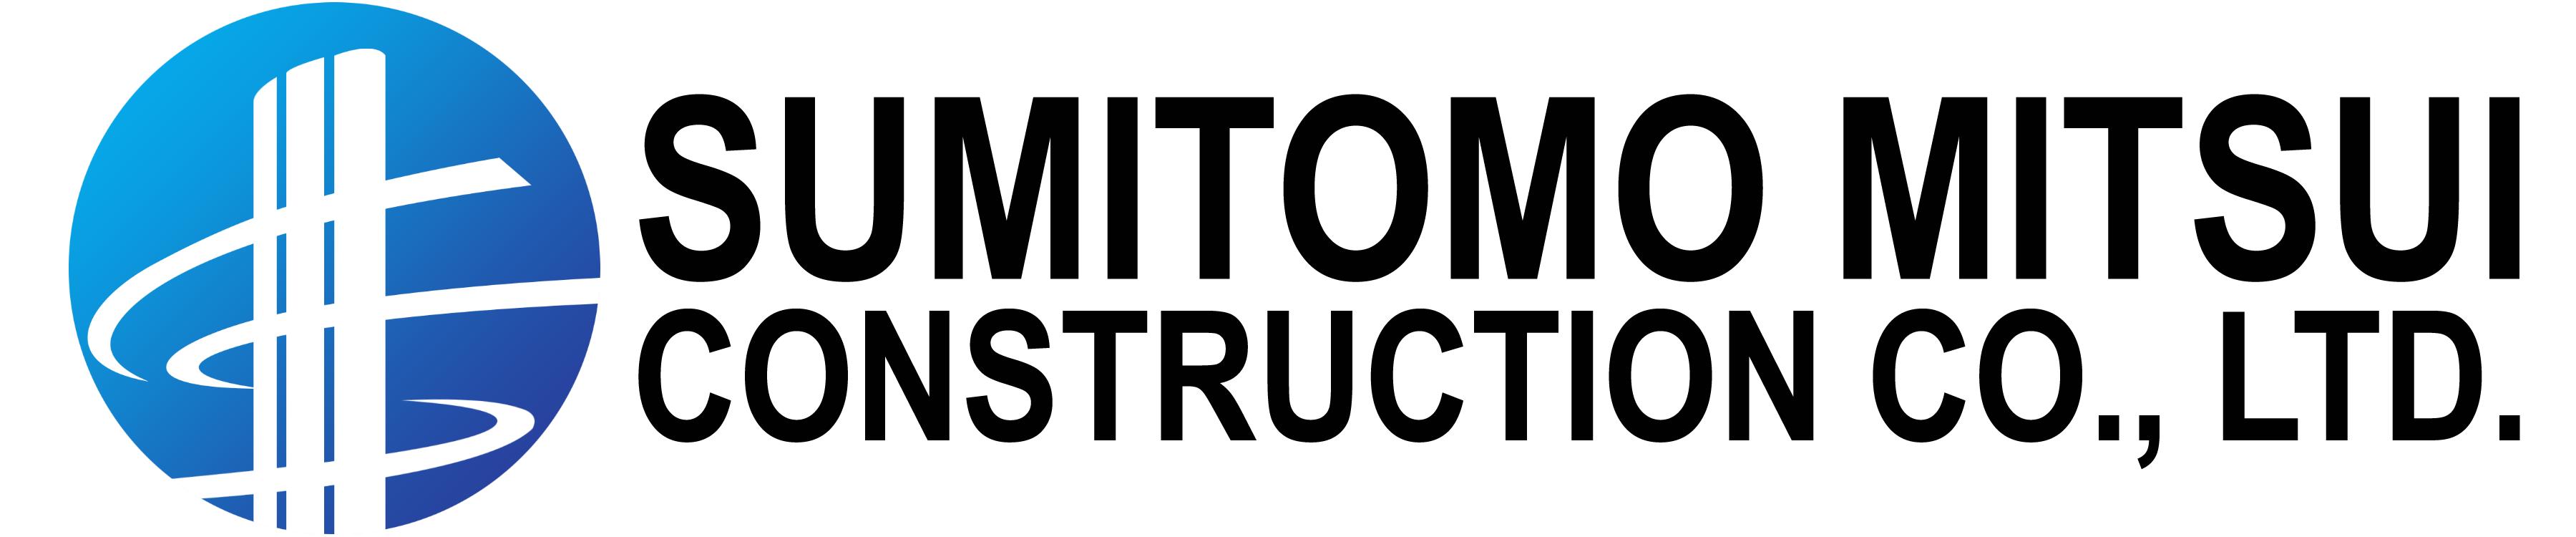 SUMITOMO MITSUI CONSTRUCTION CO., LTD.